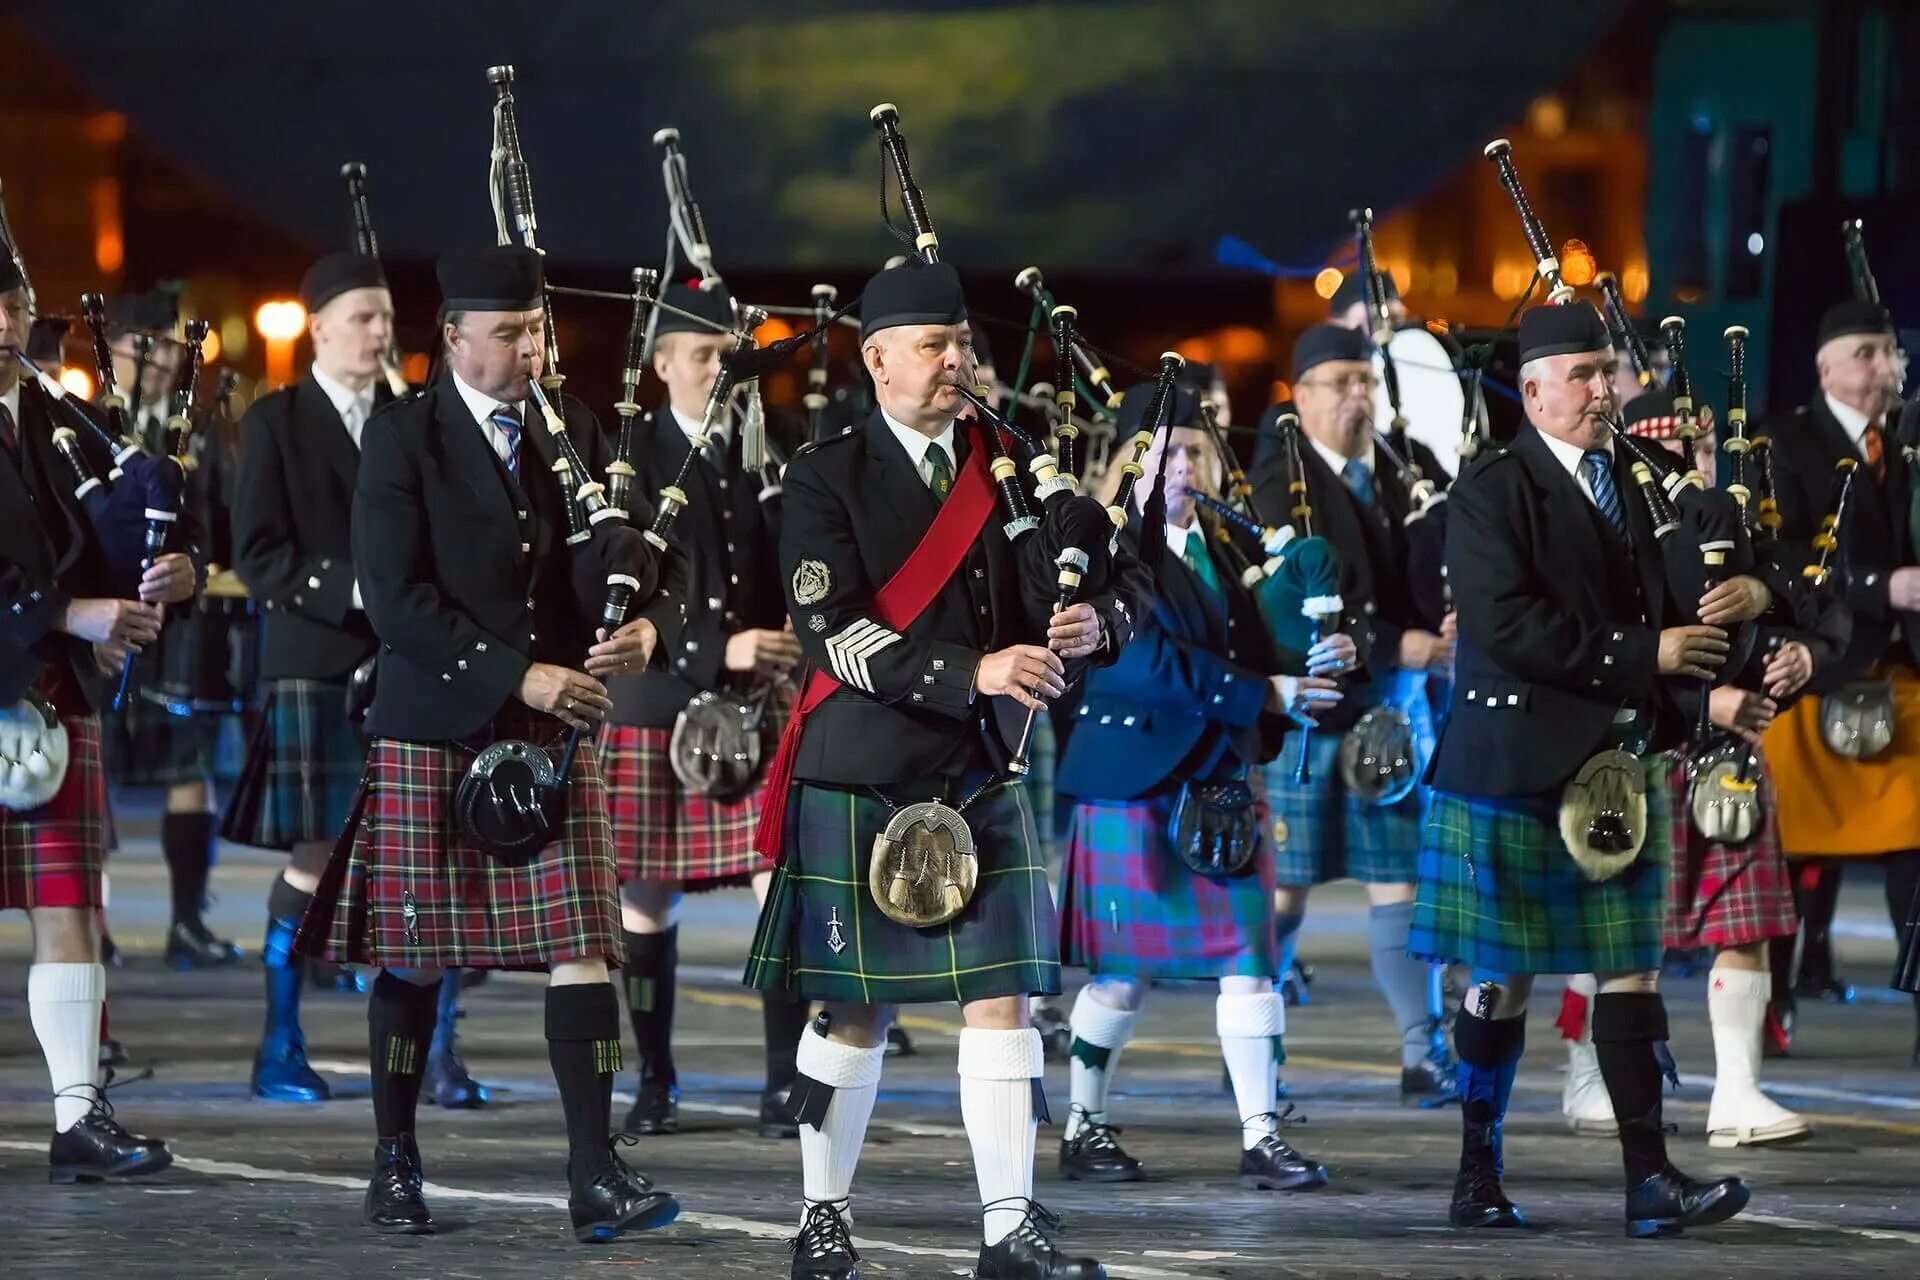 Волынка в Шотландии. Волынщики Шотландии. Шотландия музыкальный инструмент национальный волынка. Спасская башня Кельтский оркестр.